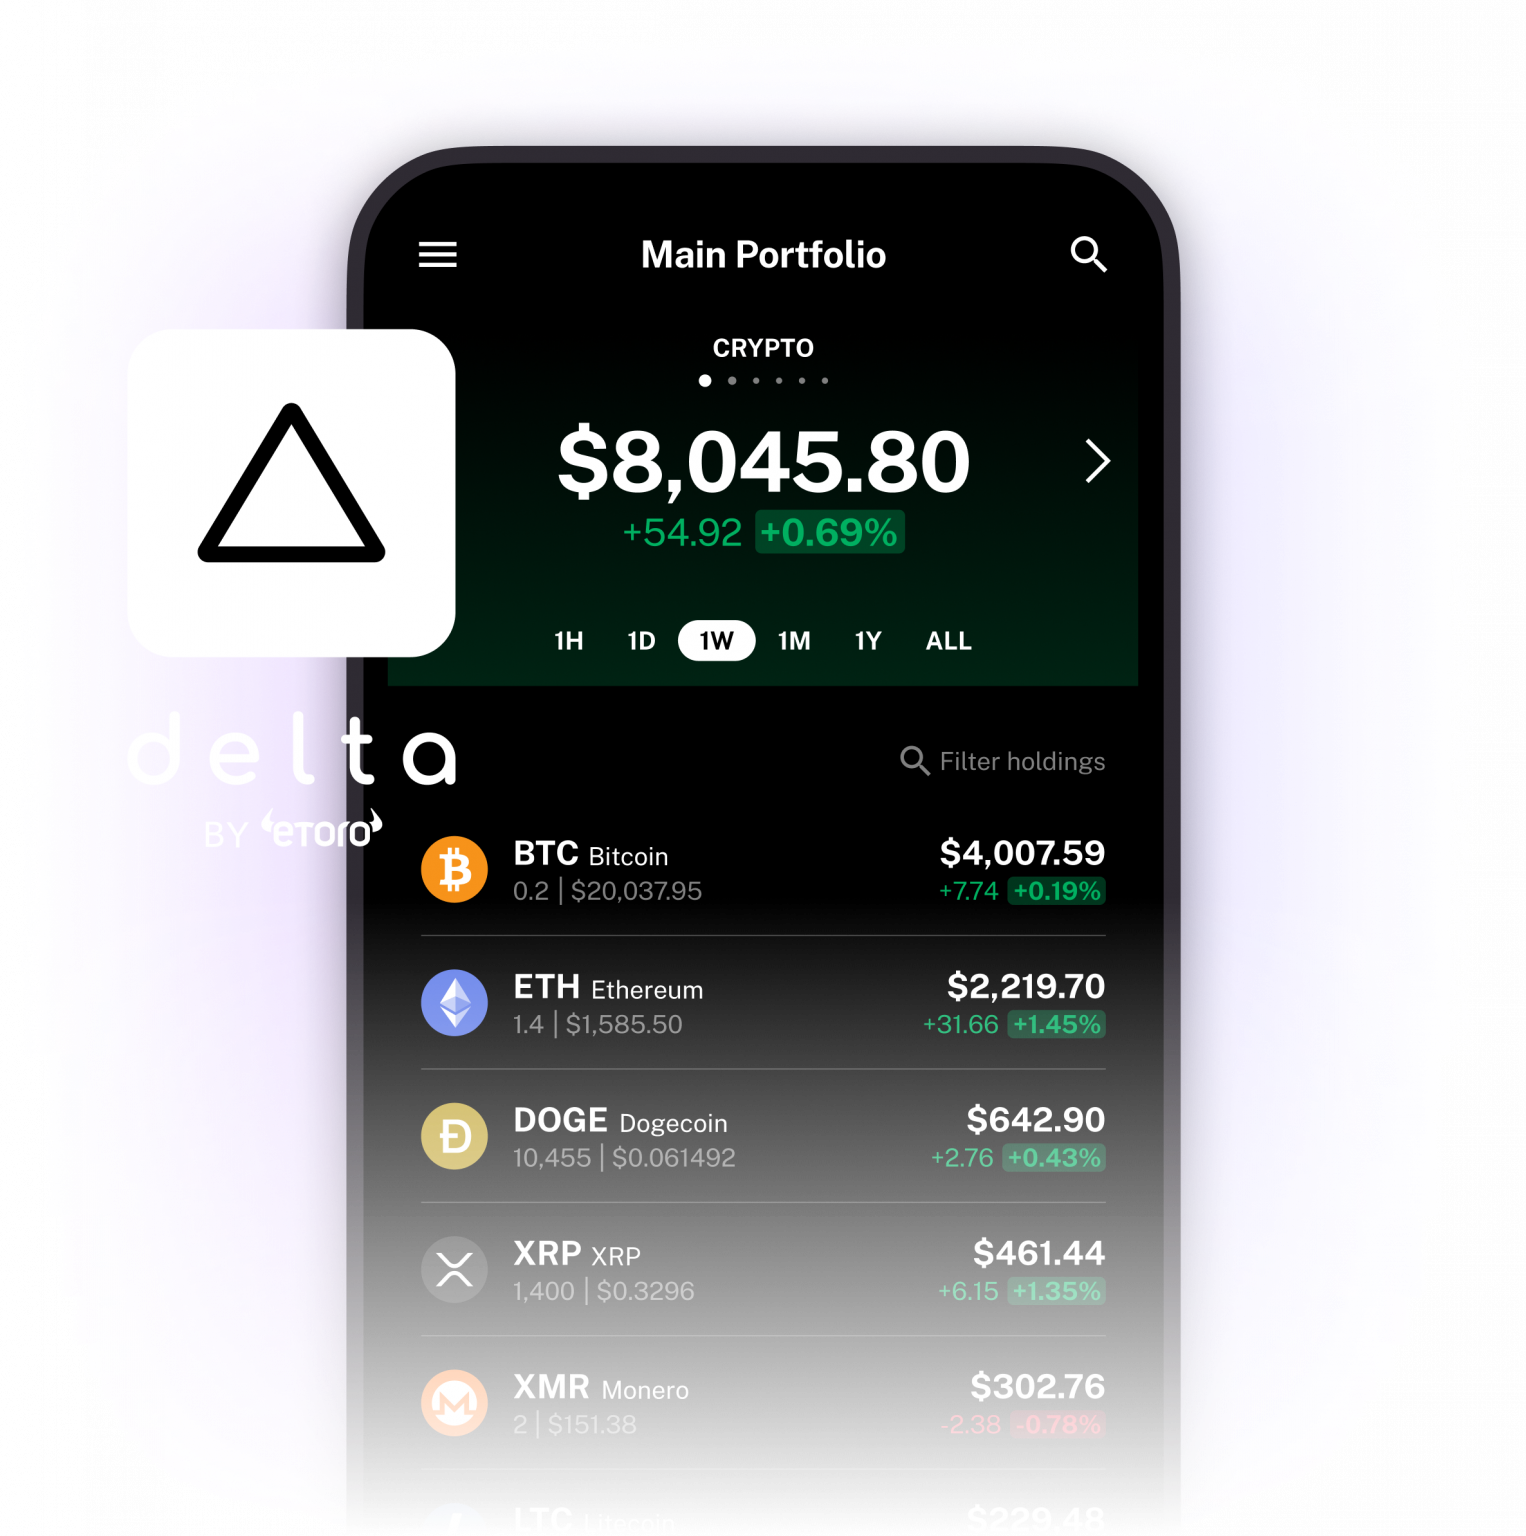 Delta app UI